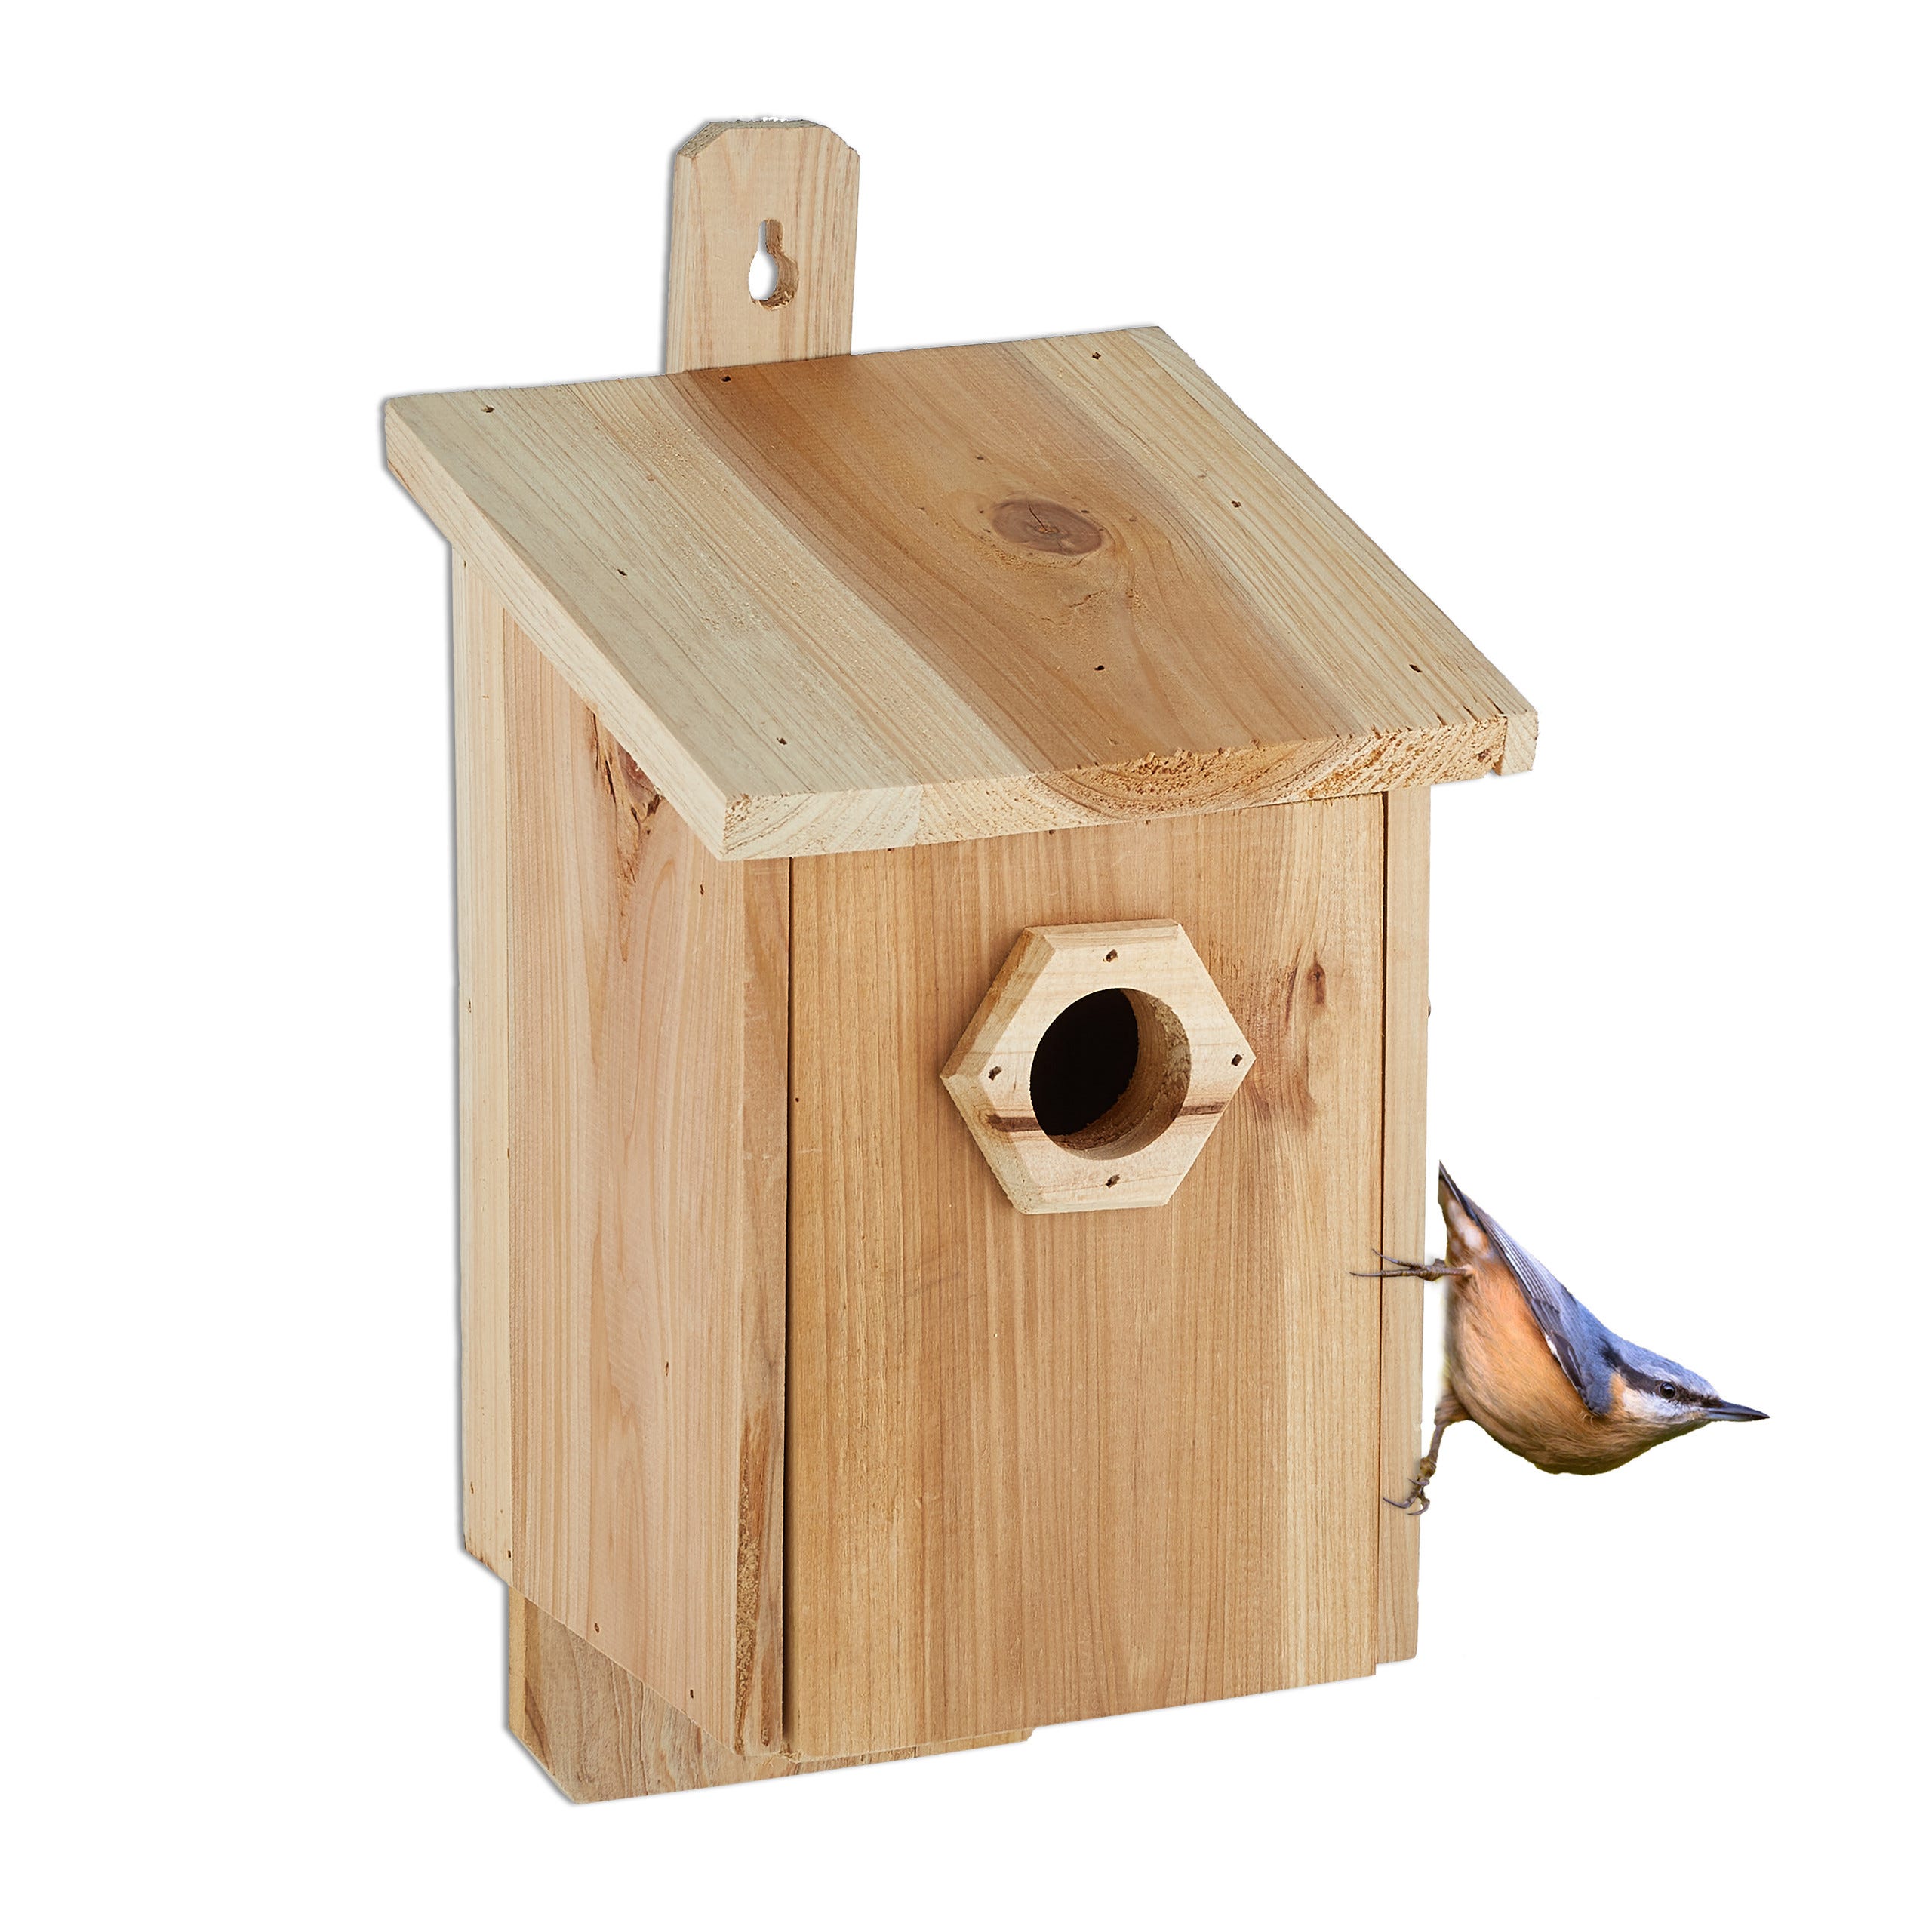 Maison pour oiseaux : où l'acheter et comment l'installer ?